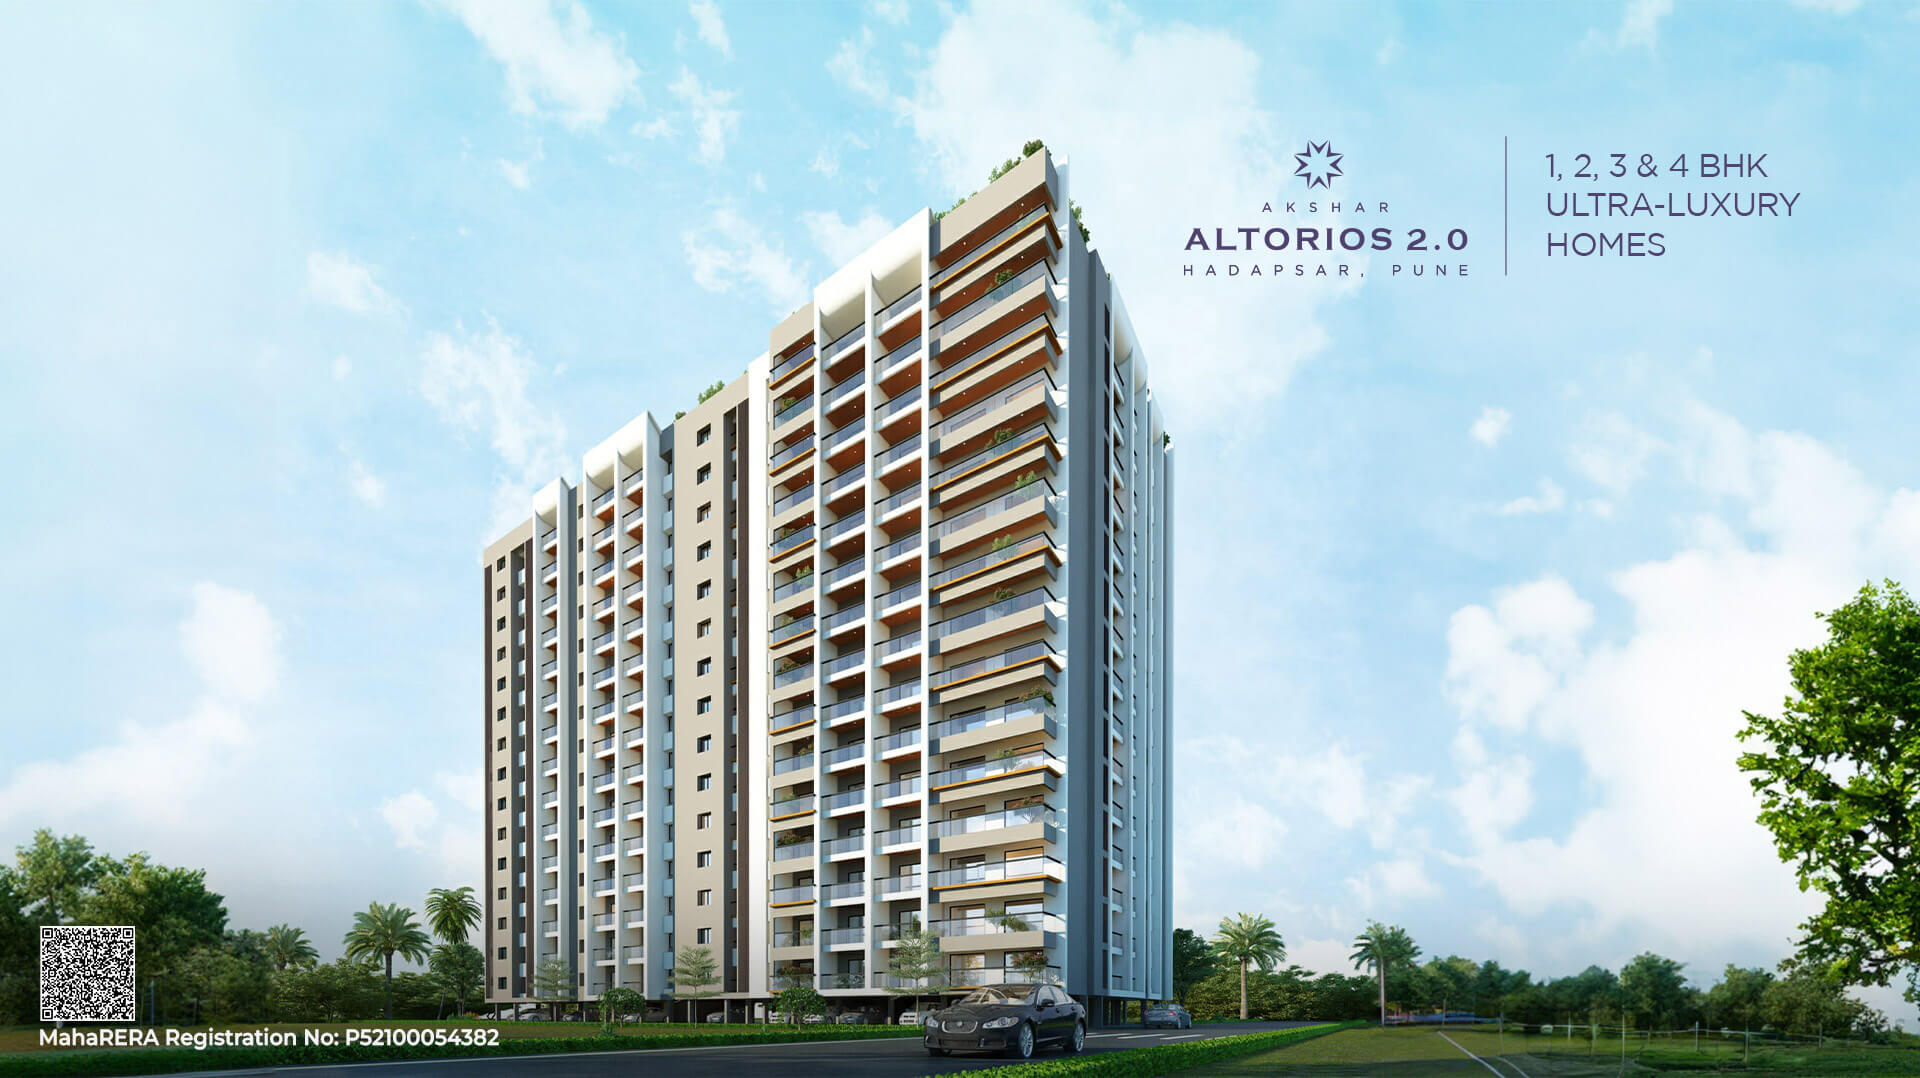 Akshar Akshar Altorios 2.0 Metropolis Apartment